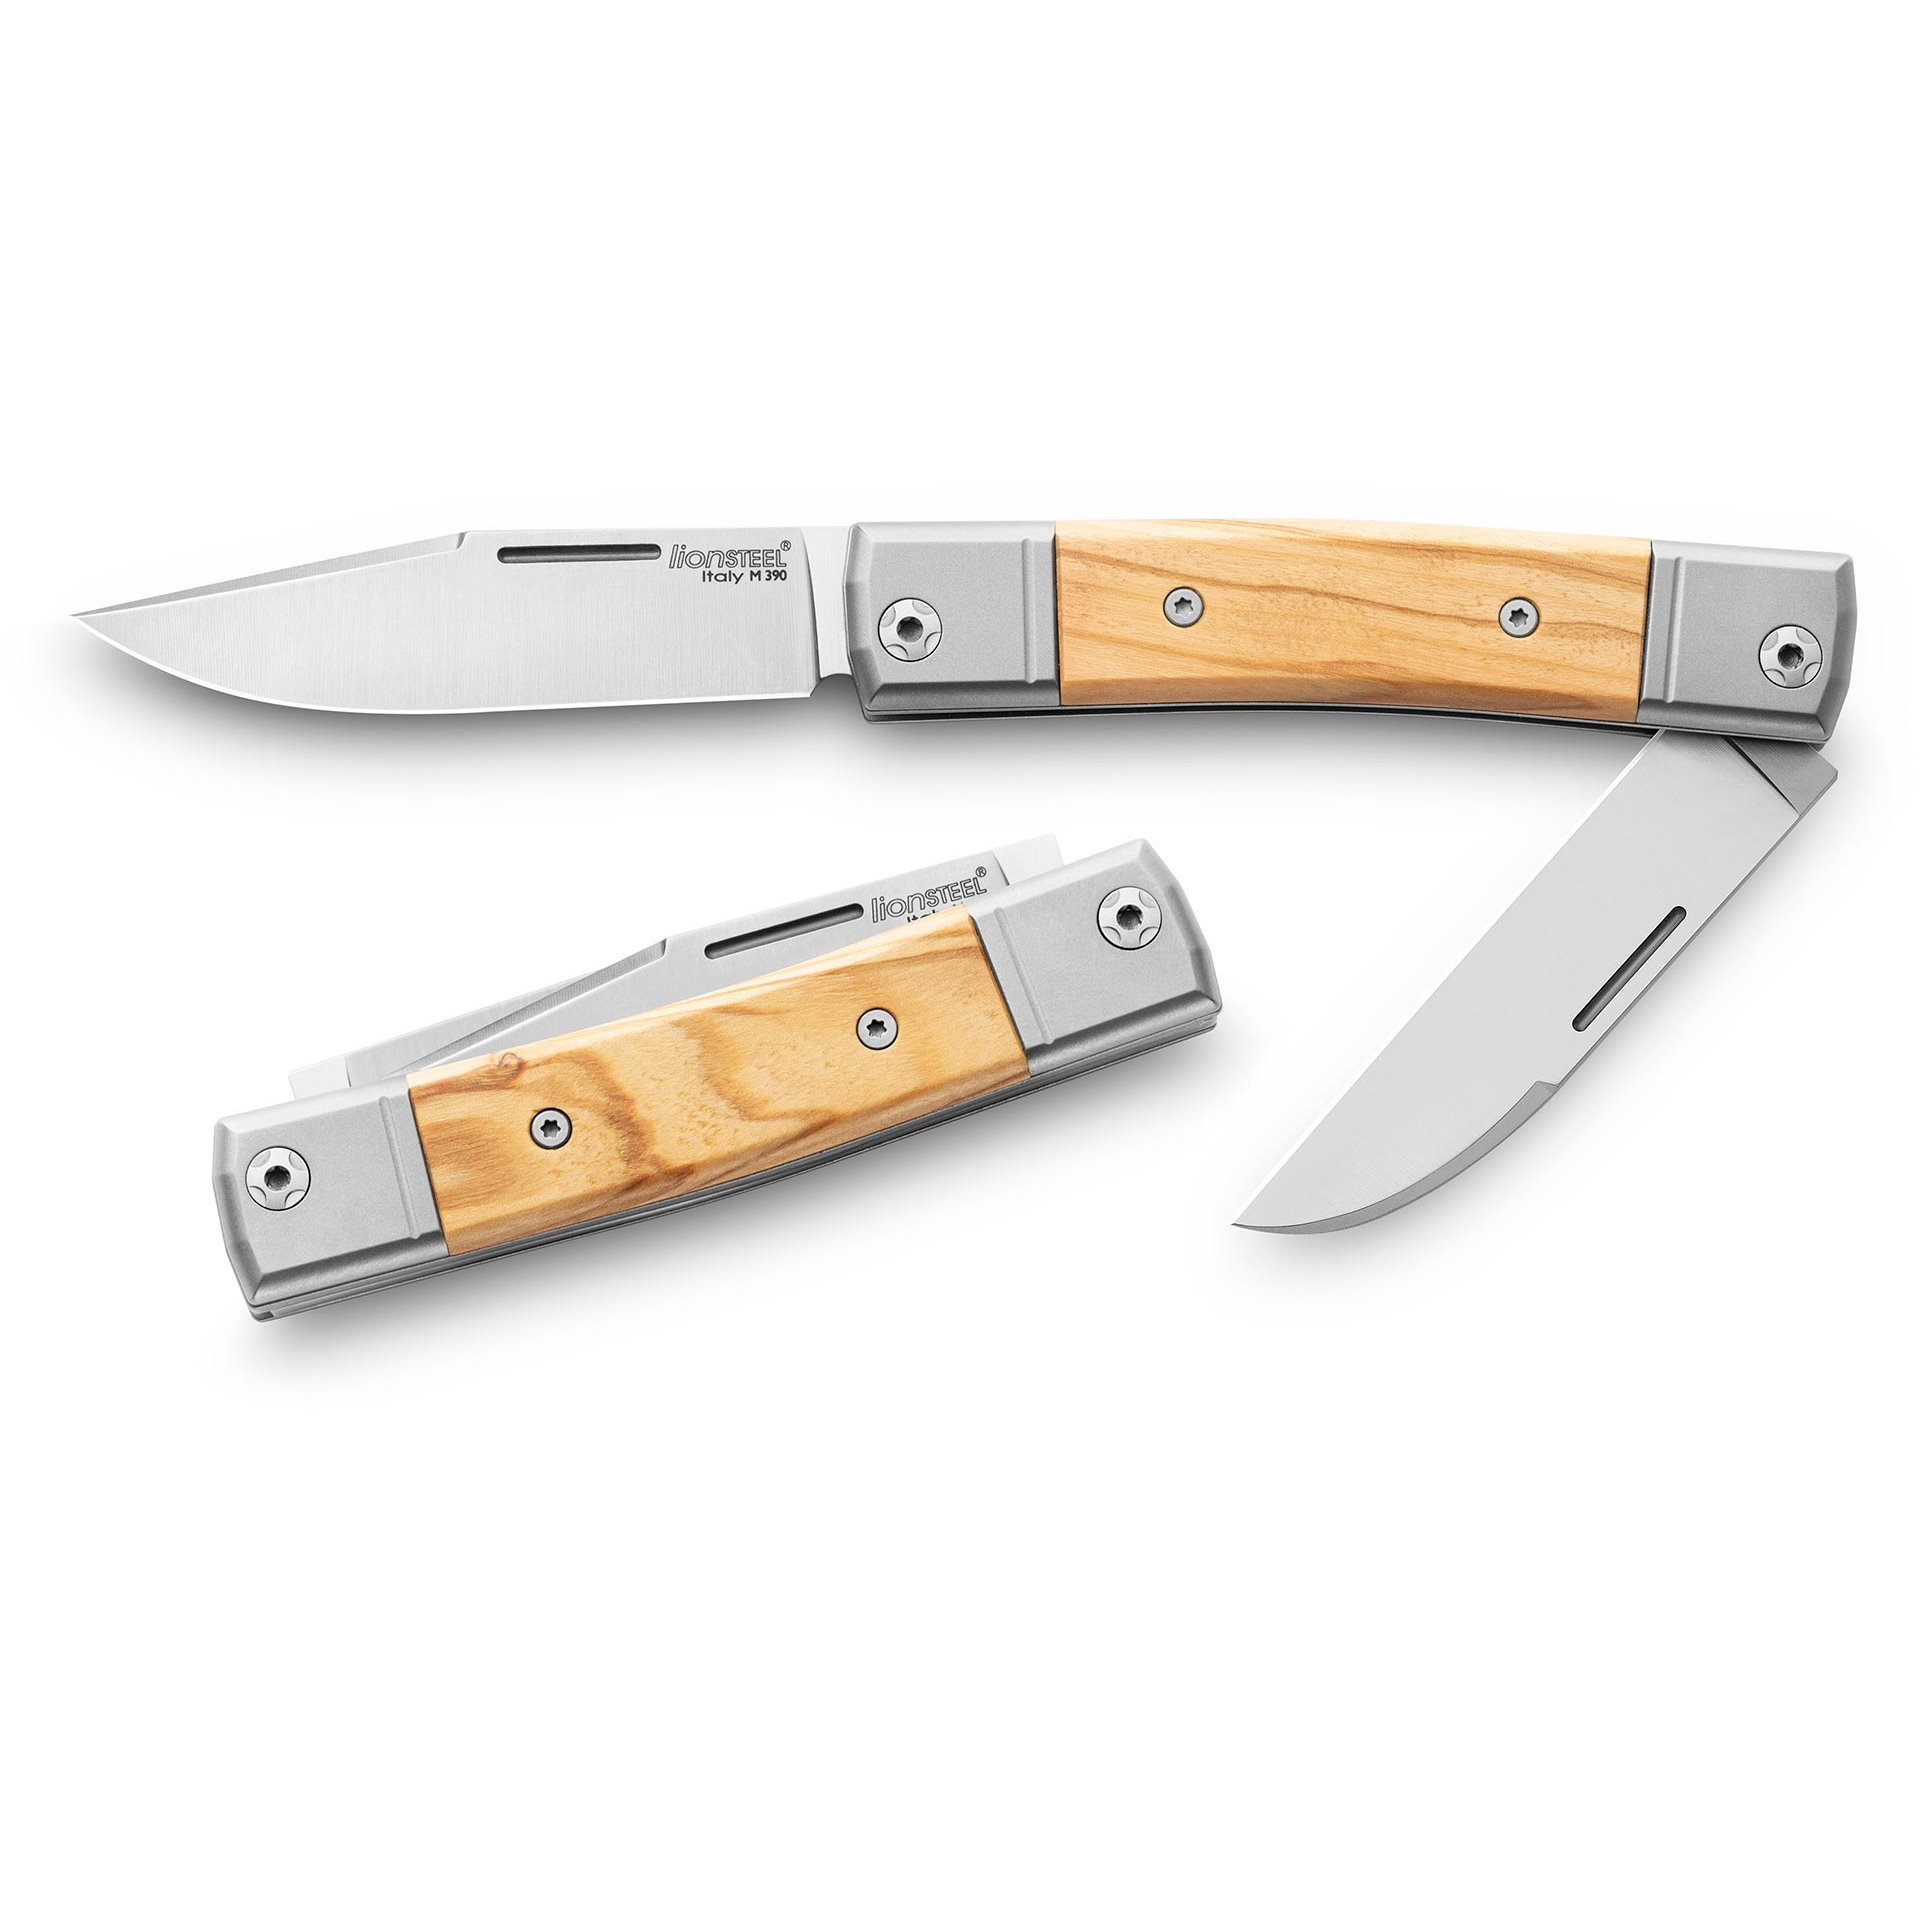 Складной нож LionSteel BestMan Two blades, сталь M390, рукоять Olive нож скрытого ношения с фиксированным клинком spartan blades formido клинок сталь cpm s35vn цельнометаллический